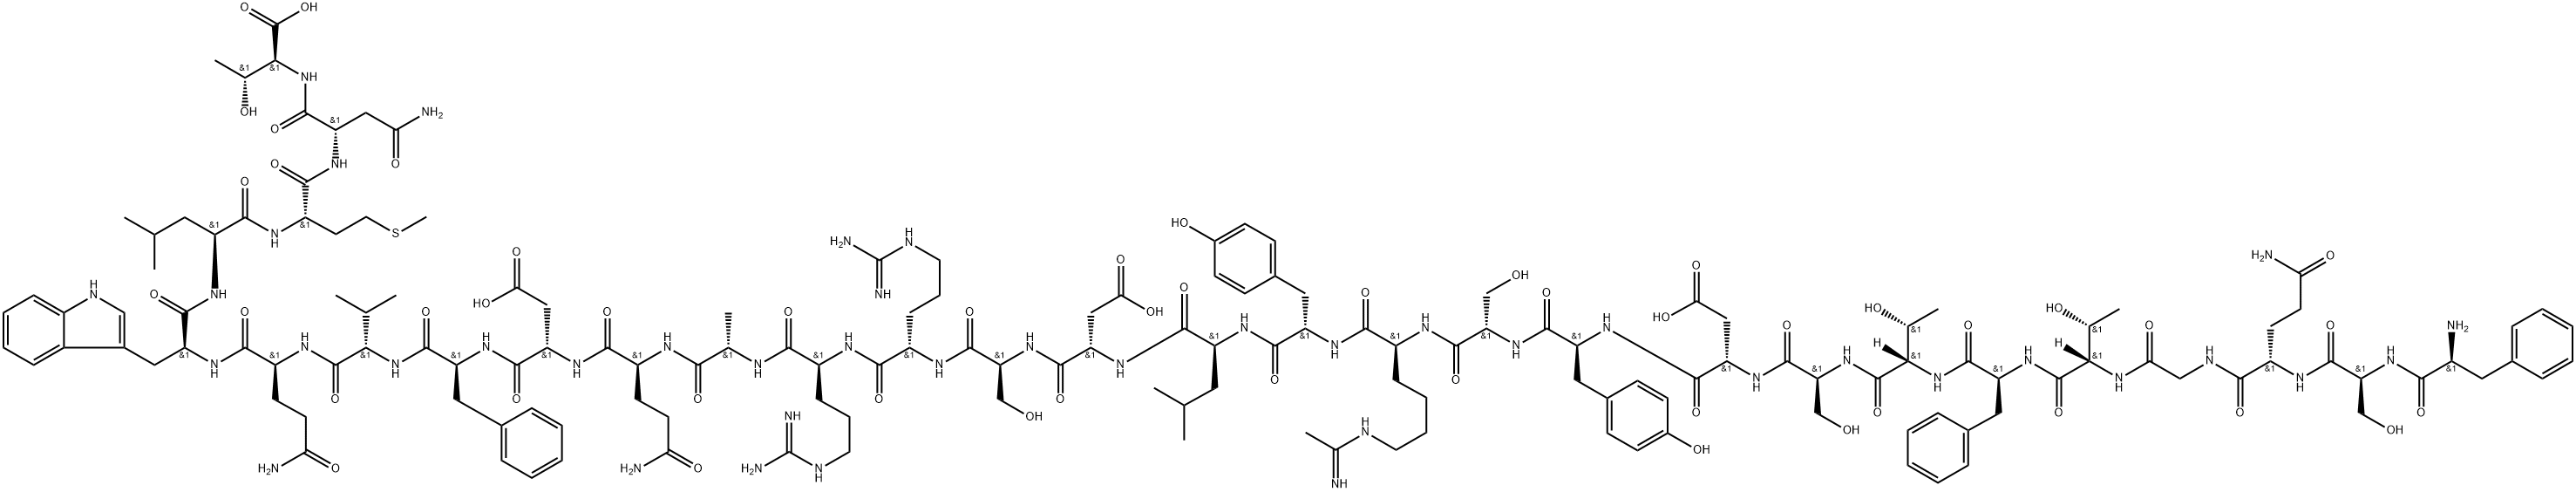 N(epsilon)-acetimidoglucagon, Phe(1)-|